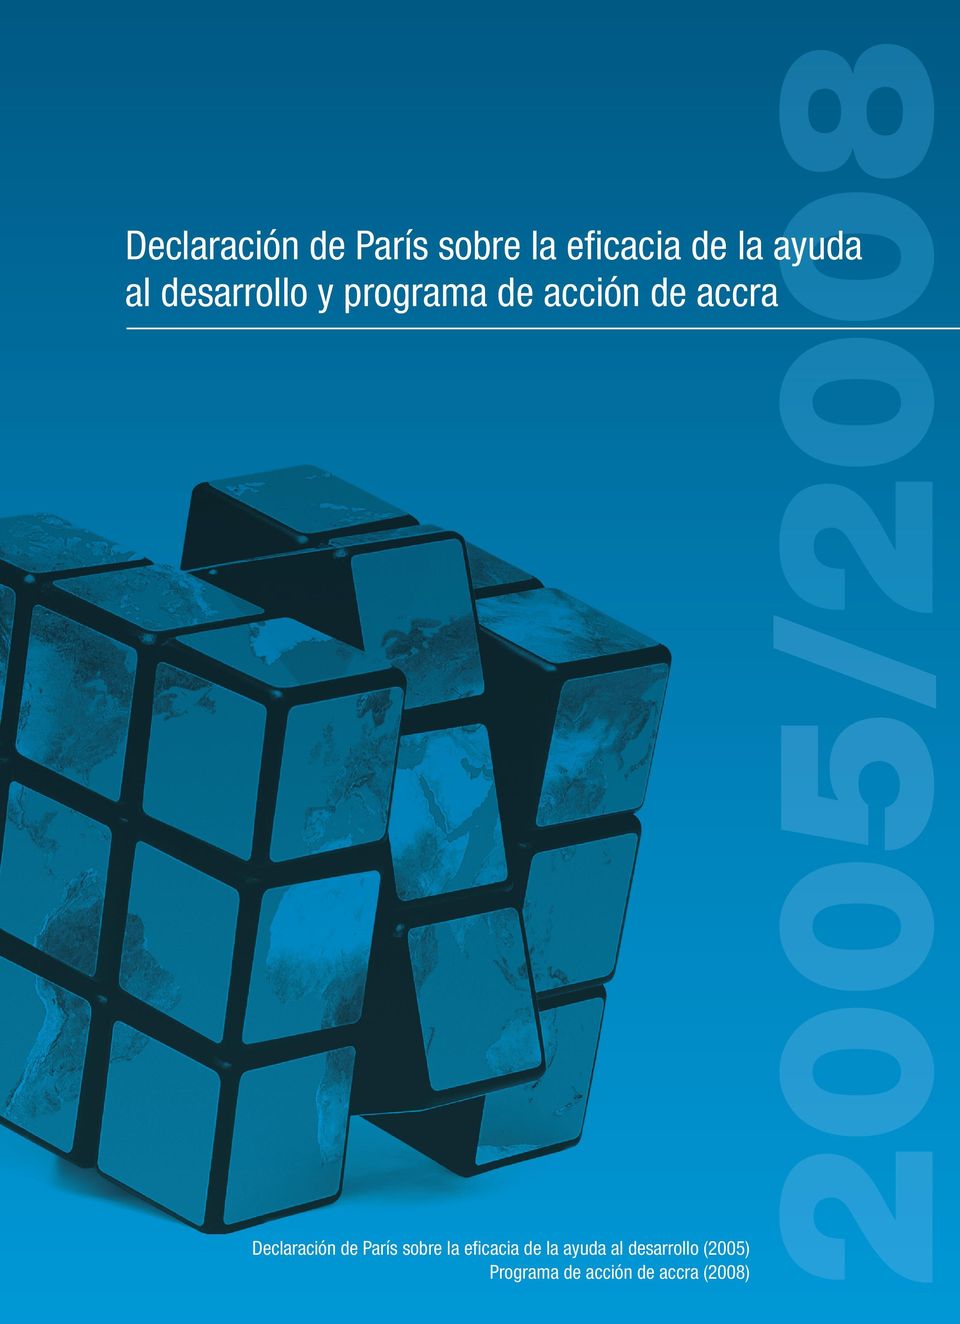 (2008) 2005/2008  al desarrollo y programa de acción